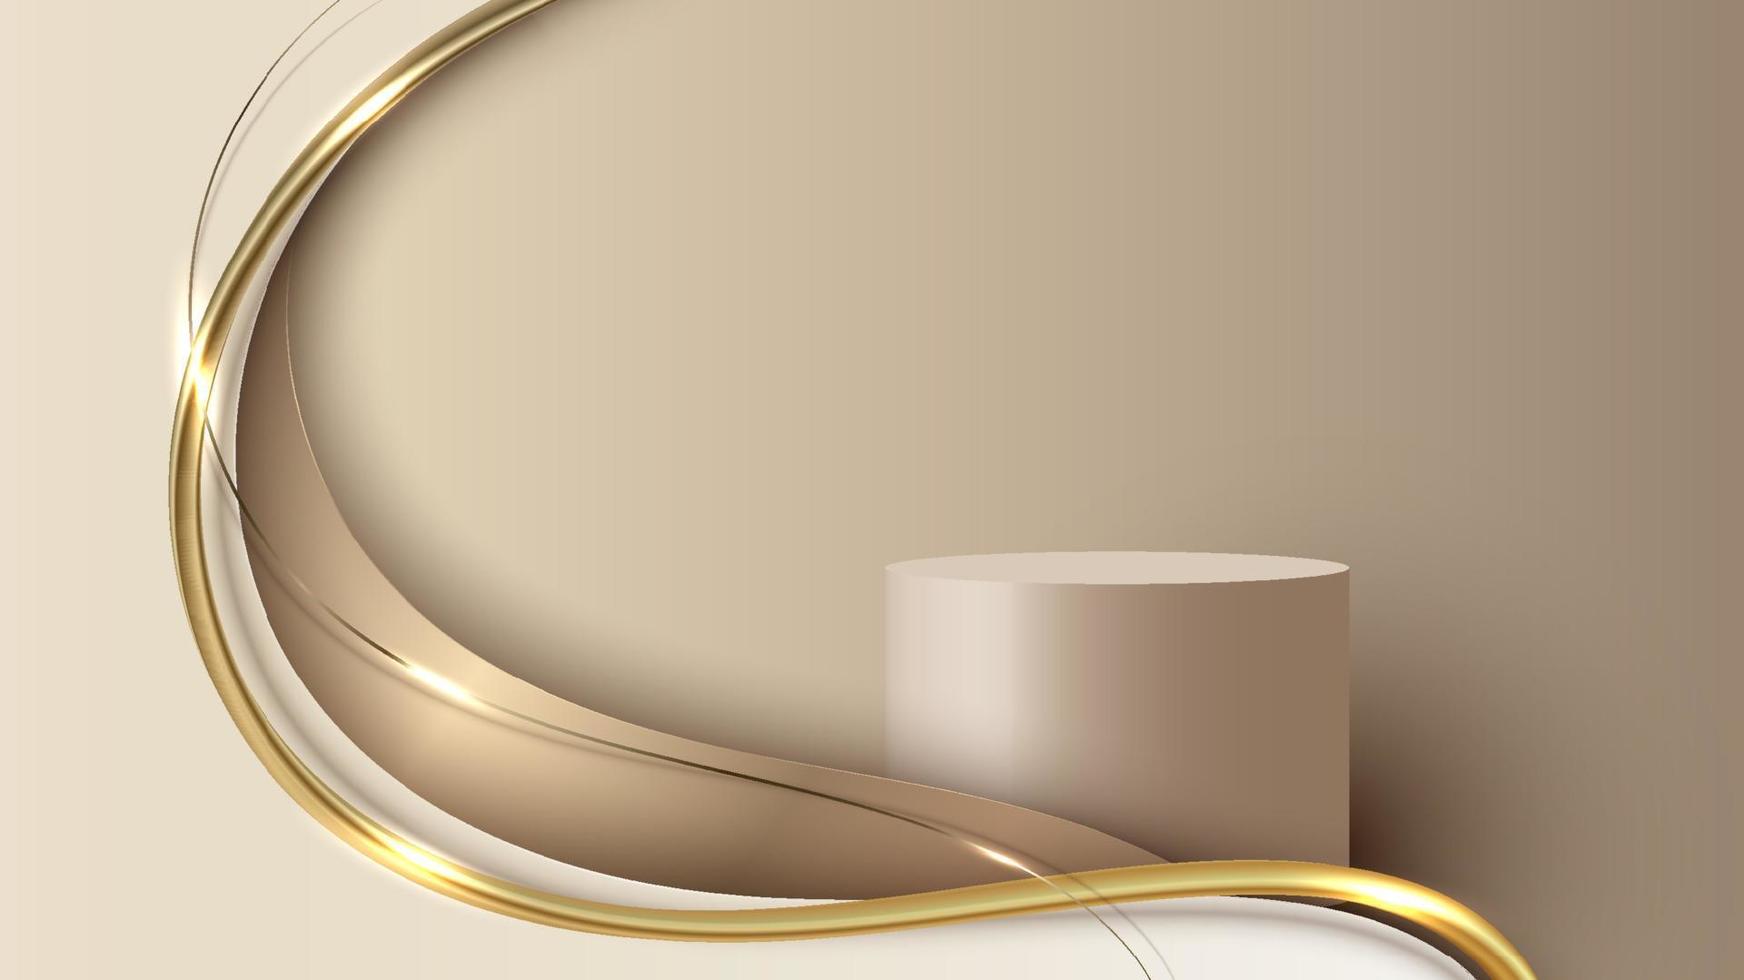 modelo abstrato pódio de cilindro 3d forma de onda dourada elegante com linha de ouro brilhante iluminação cintilante no estilo de luxo de fundo creme vetor